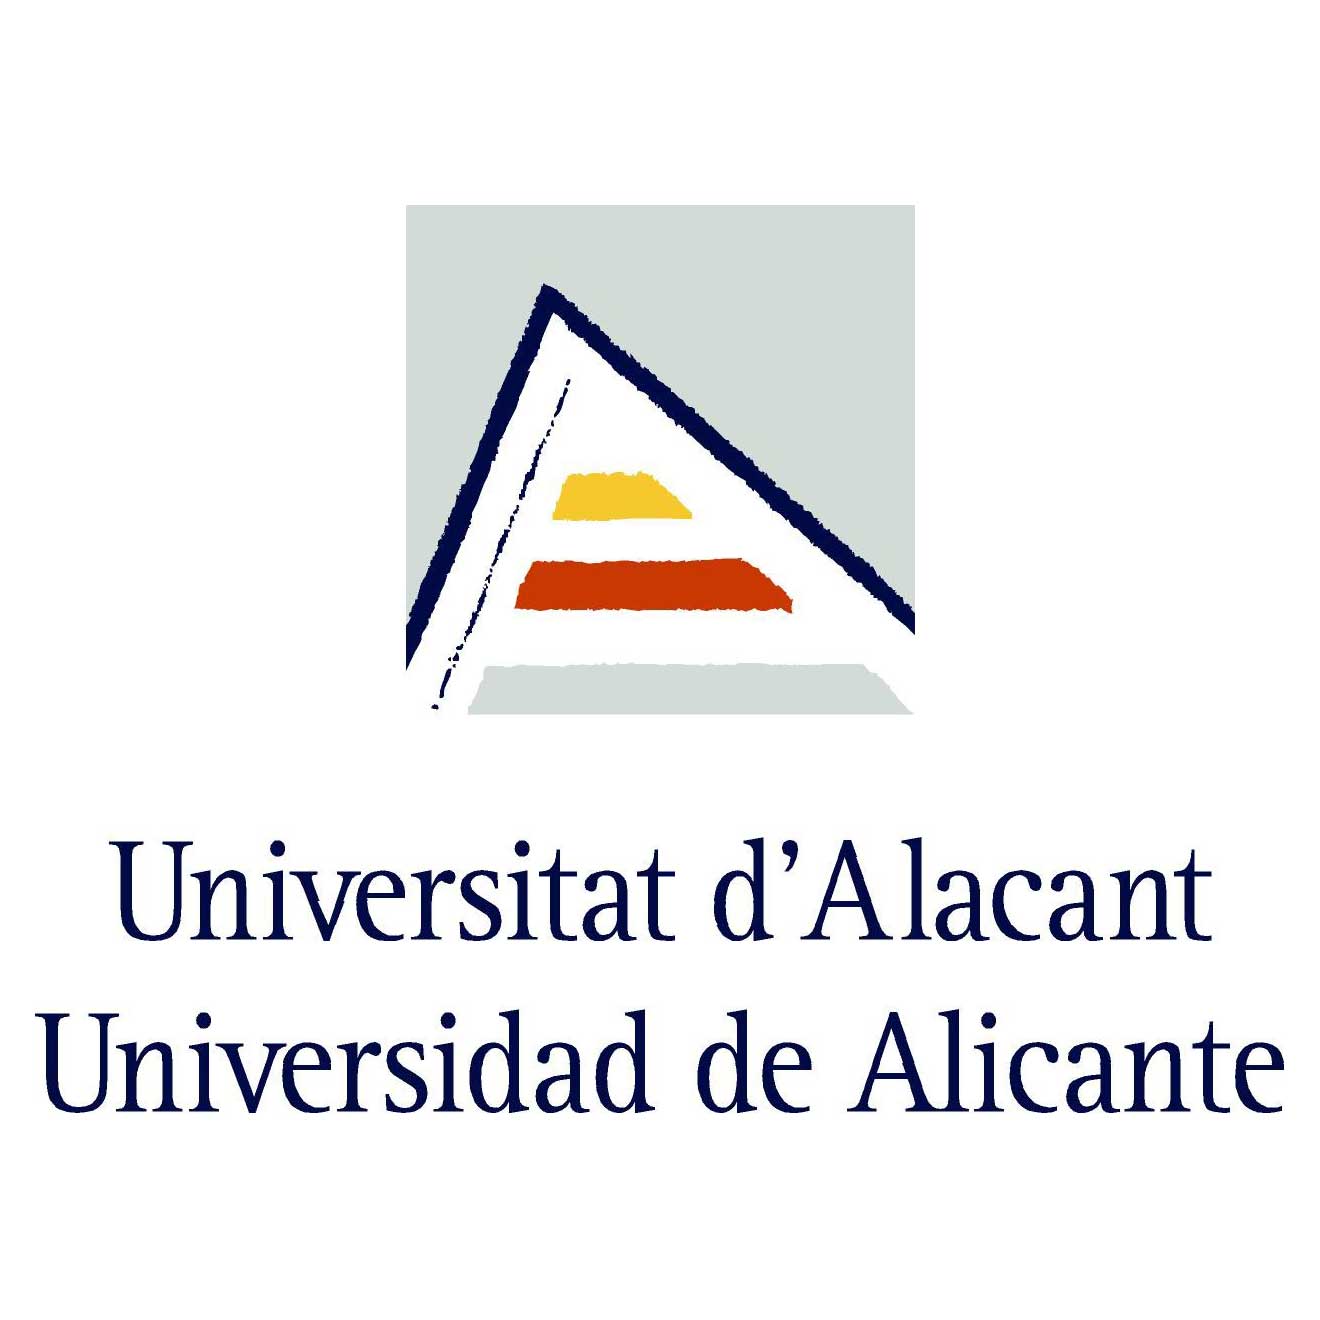 Facultad de Ciencias Económicas y Empresariales de la Universidad de Alicante